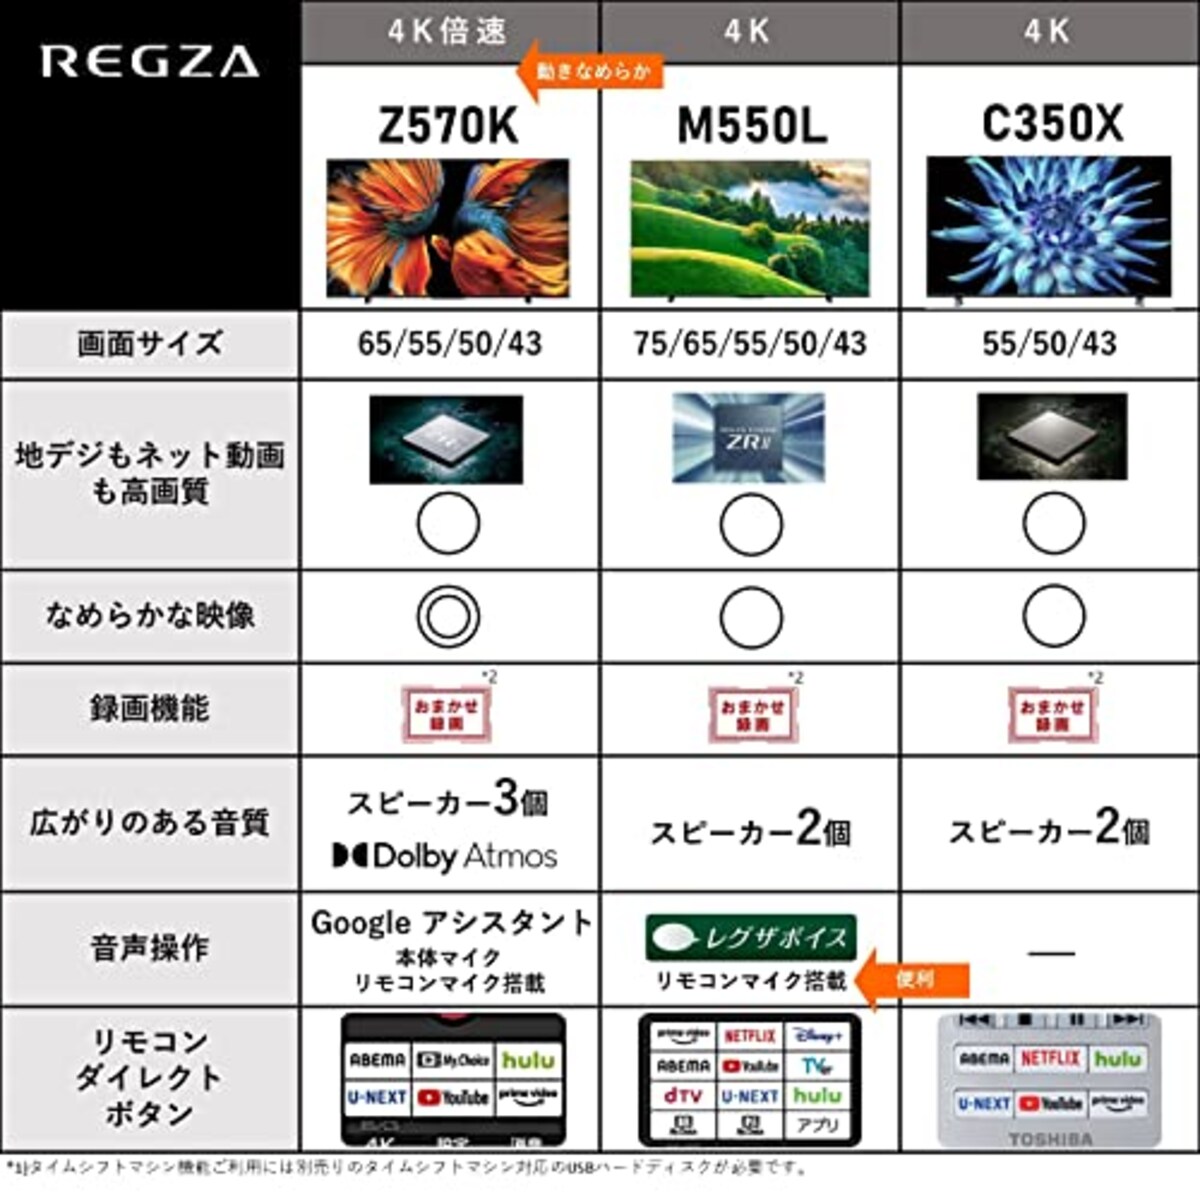  レグザ 43V型 4K 液晶テレビ 43C350X 4Kチューナー内蔵 外付けHDD 裏番組録画 ネット動画対応 (2020年モデル)画像2 